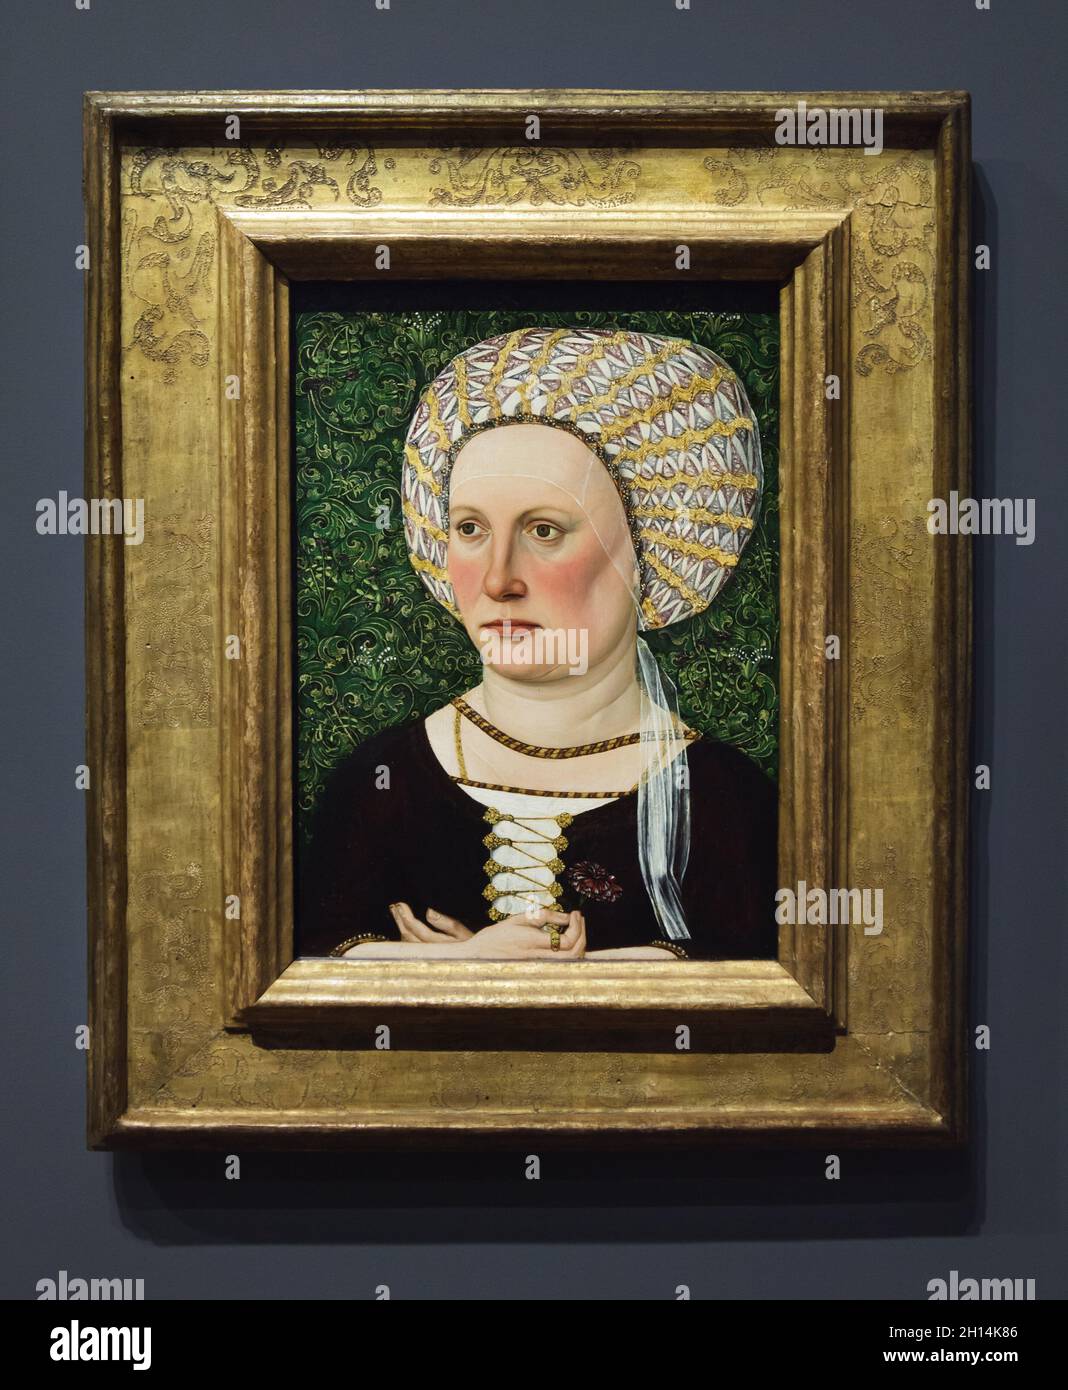 Peinture 'Portrait d'une femme portant un Bonnet or-entrelacé' par le peintre allemand de la Renaissance Jacob Elsner (1500) exposé à l'exposition 'Late Gothic' dans la Berliner Gemäldegalerie (Berlin Picture Gallery) à Berlin, Allemagne. Banque D'Images